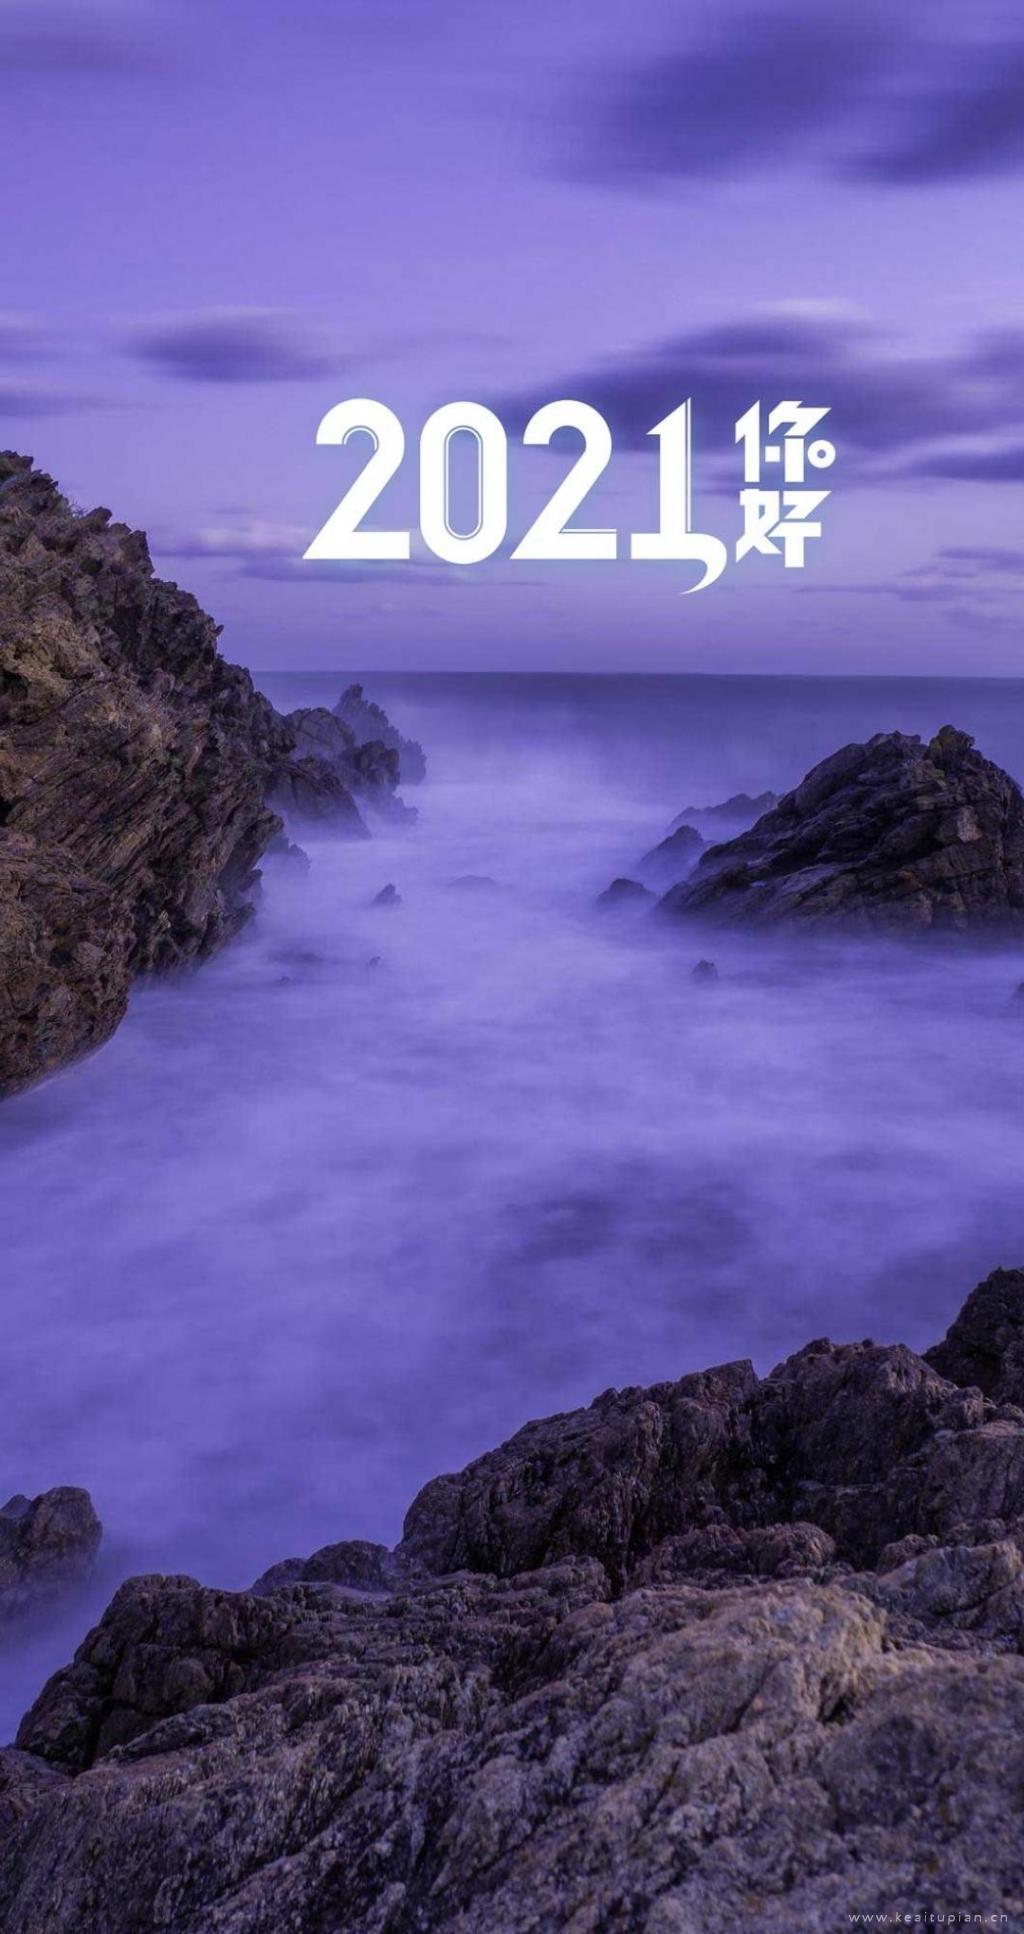 2021你好文字精选唯美大海风景图片